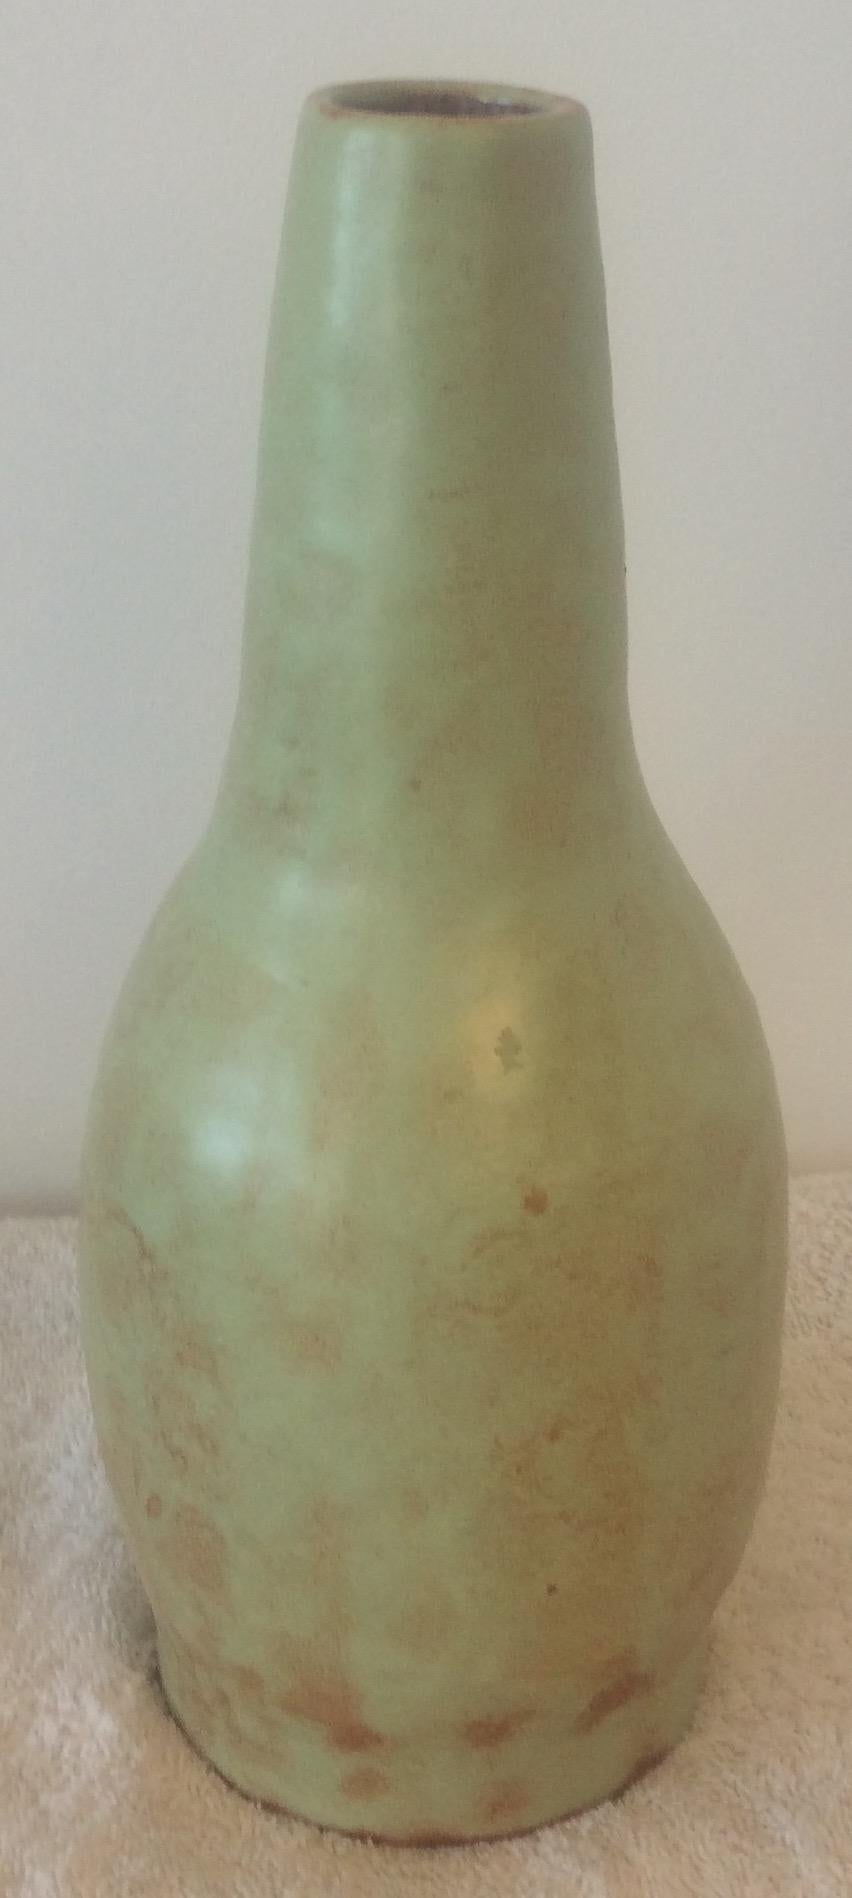 Cet éblouissant vase en céramique émaillée a été fabriqué à la main à Vallauris, en France.
Les couleurs primaires vert pâle et terracotta attirent vraiment le regard. 

Il peut rehausser n'importe quelle étagère, table, crédence ou comptoir car